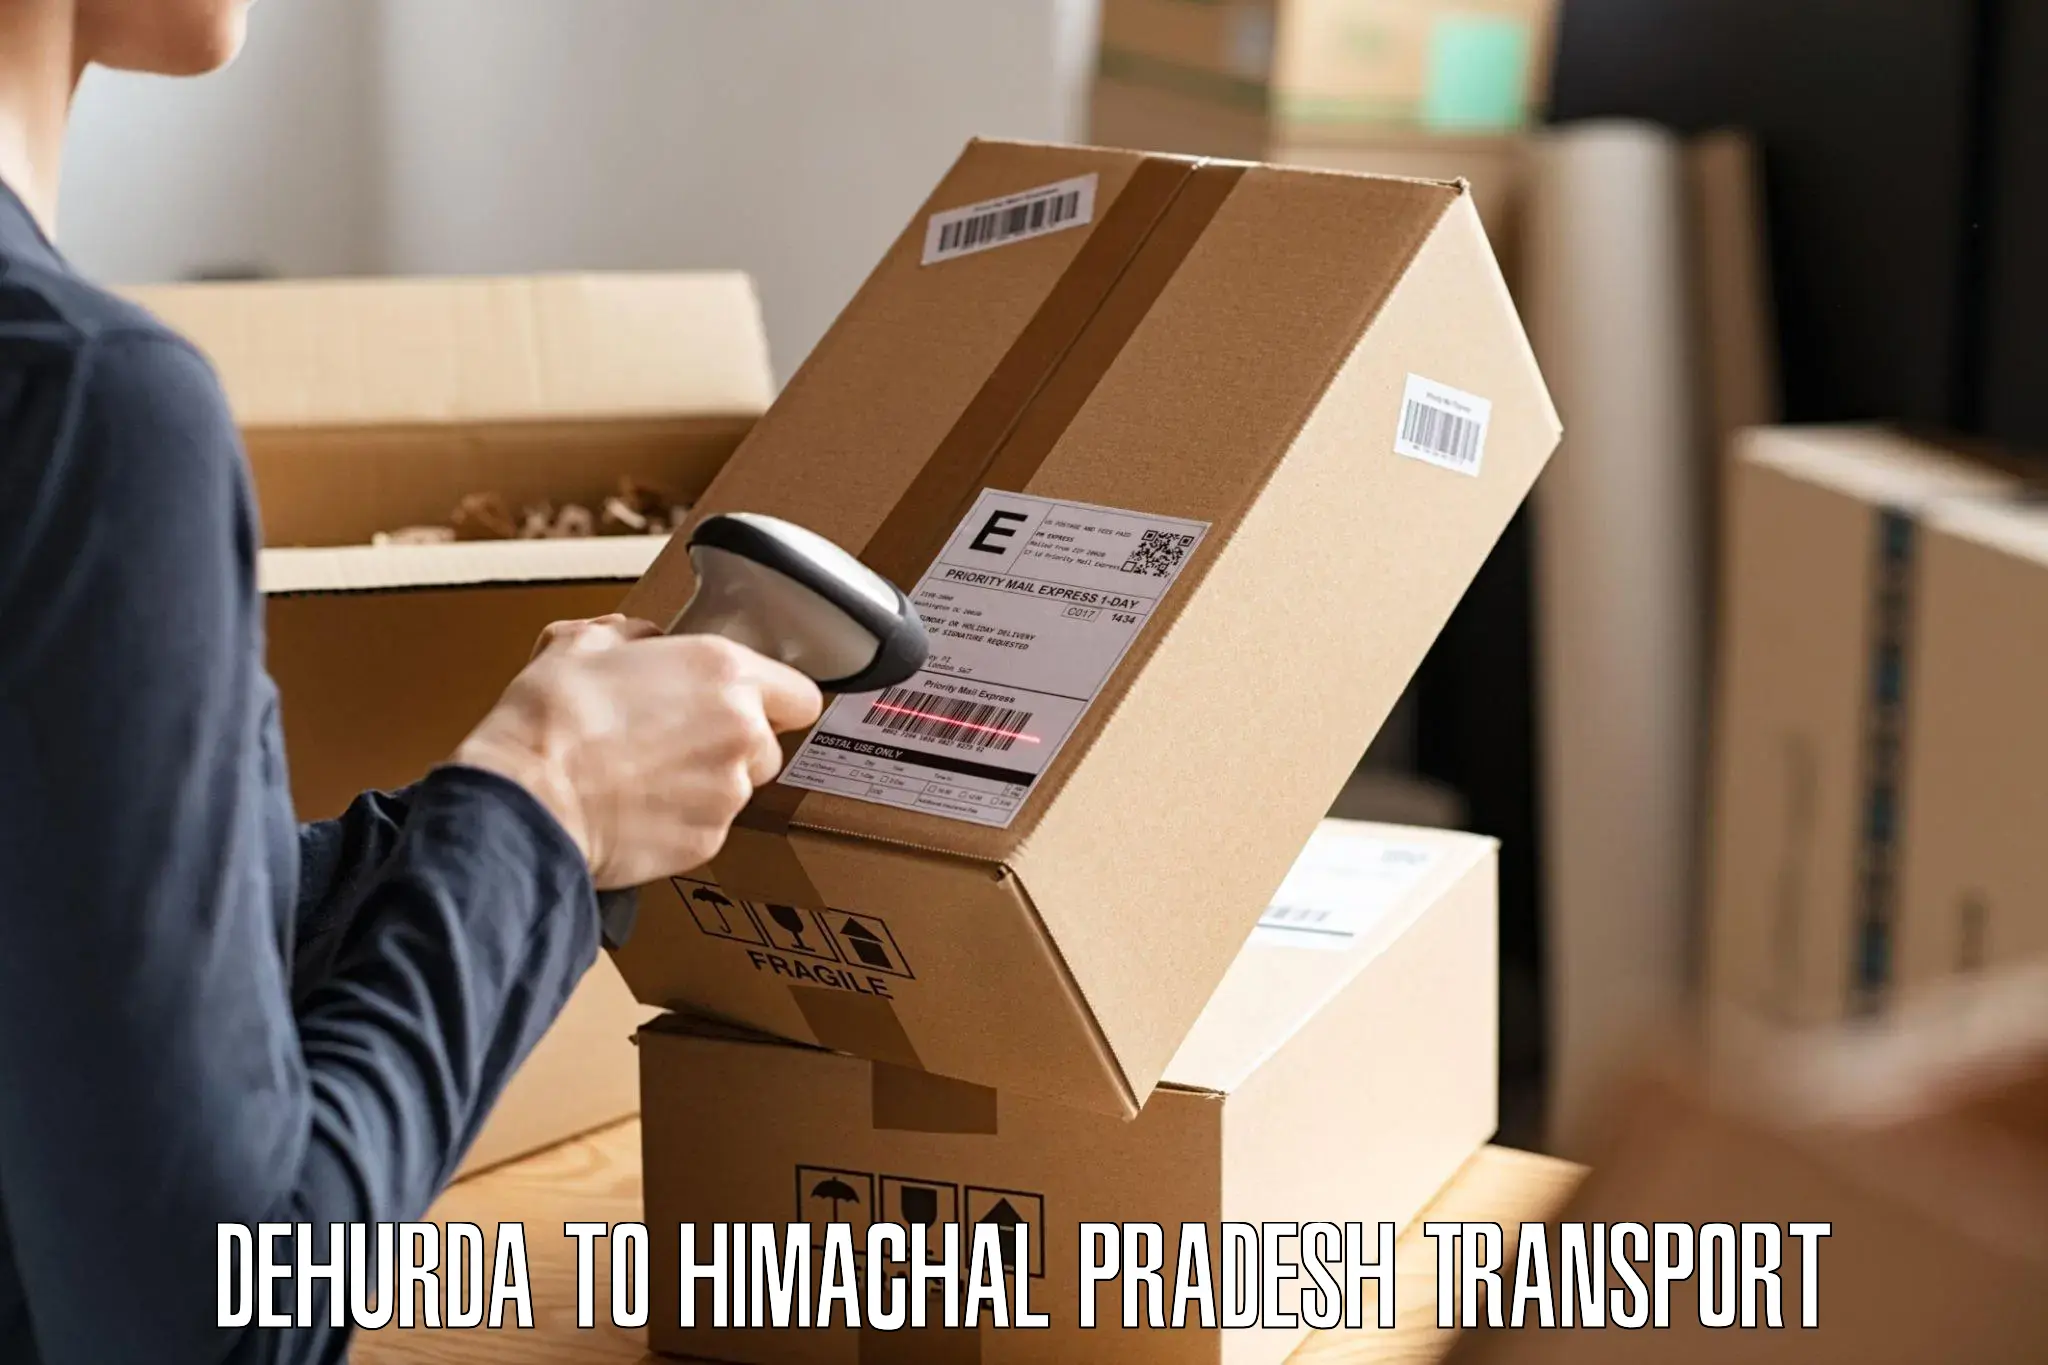 Daily parcel service transport Dehurda to Una Himachal Pradesh